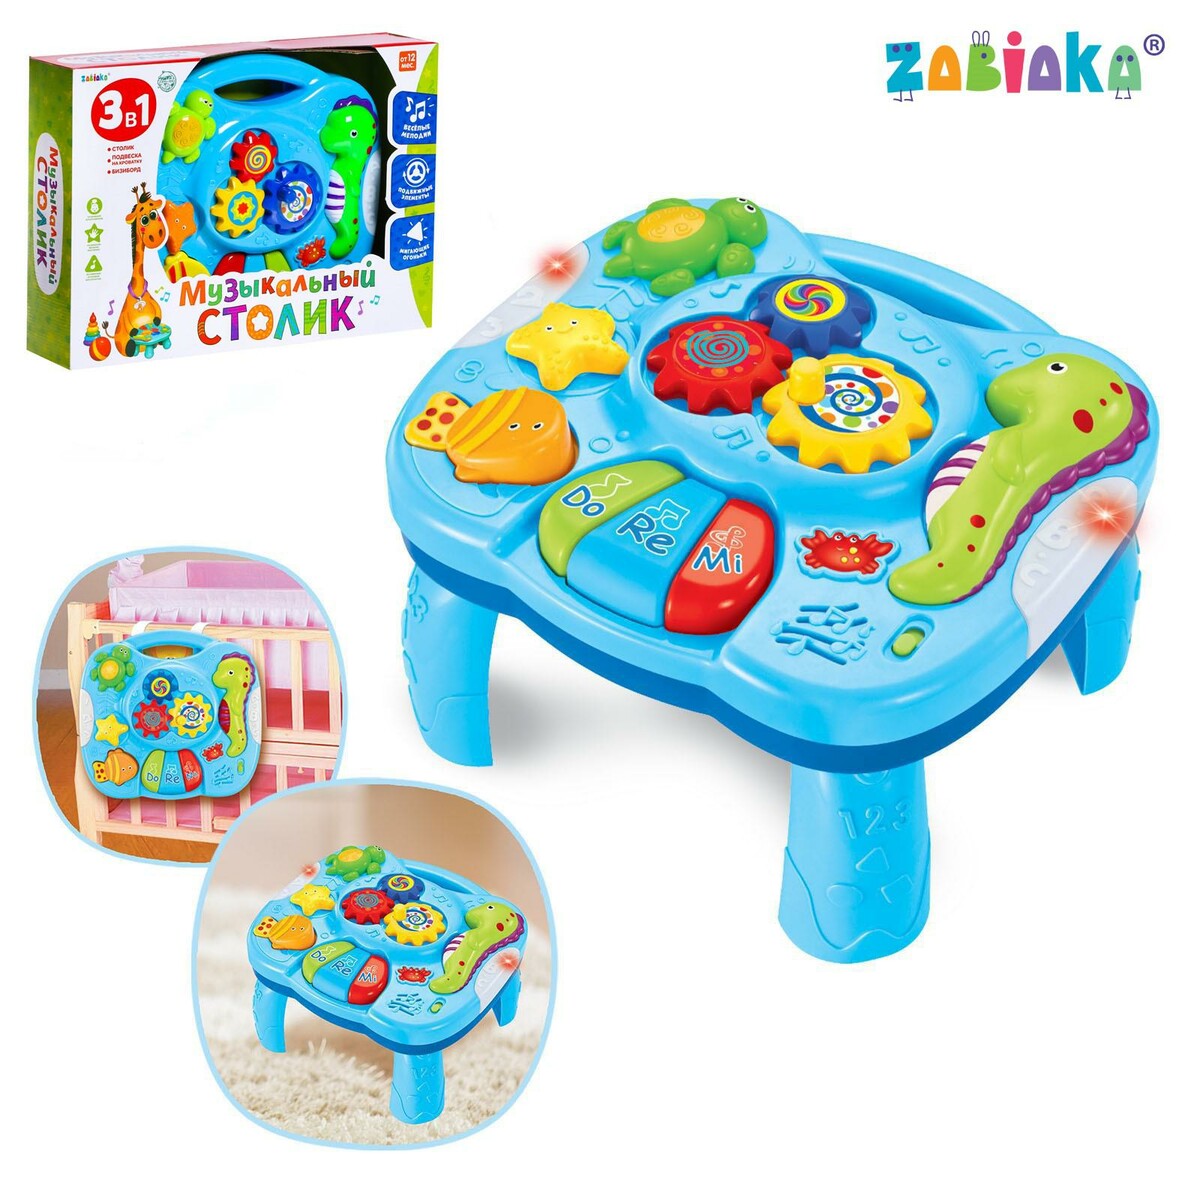 Детский столик 3 в 1 для малышей intellecta детский игровой набор для развития малышей 2 мягких модуля